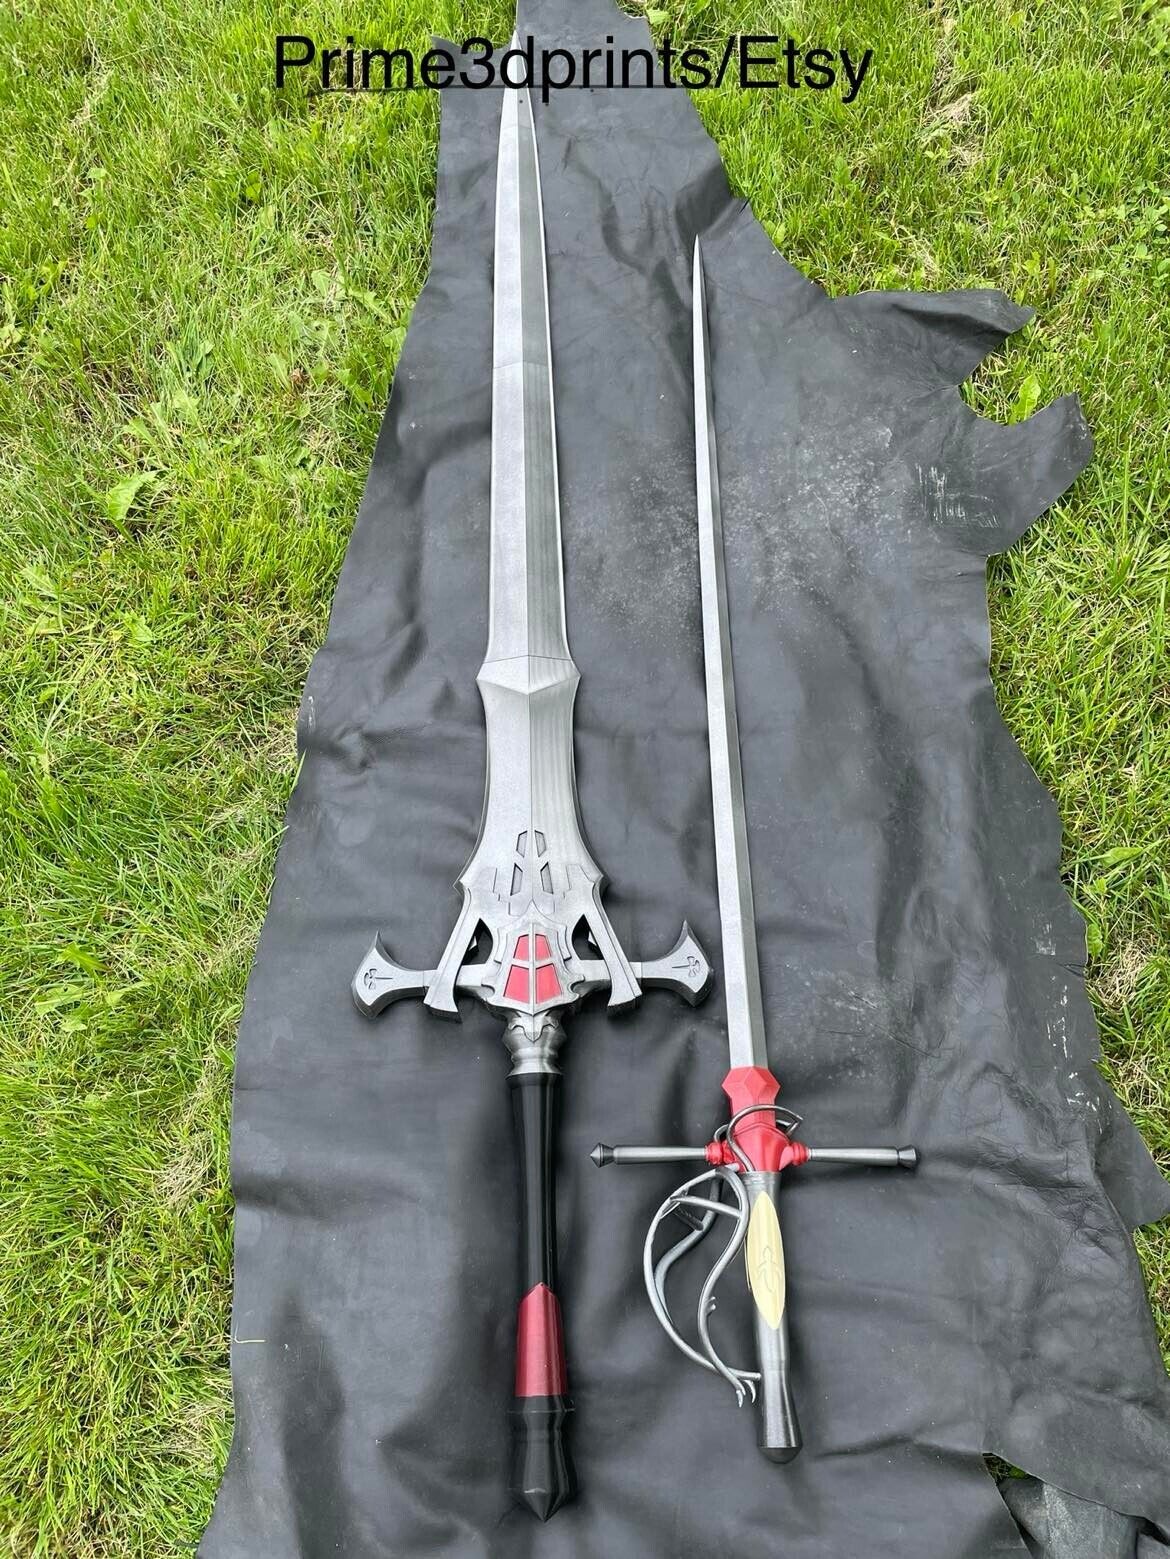 Final Fantasy 16 swords 3dprint replica for Cosplay Clive invictus ,Jill sword